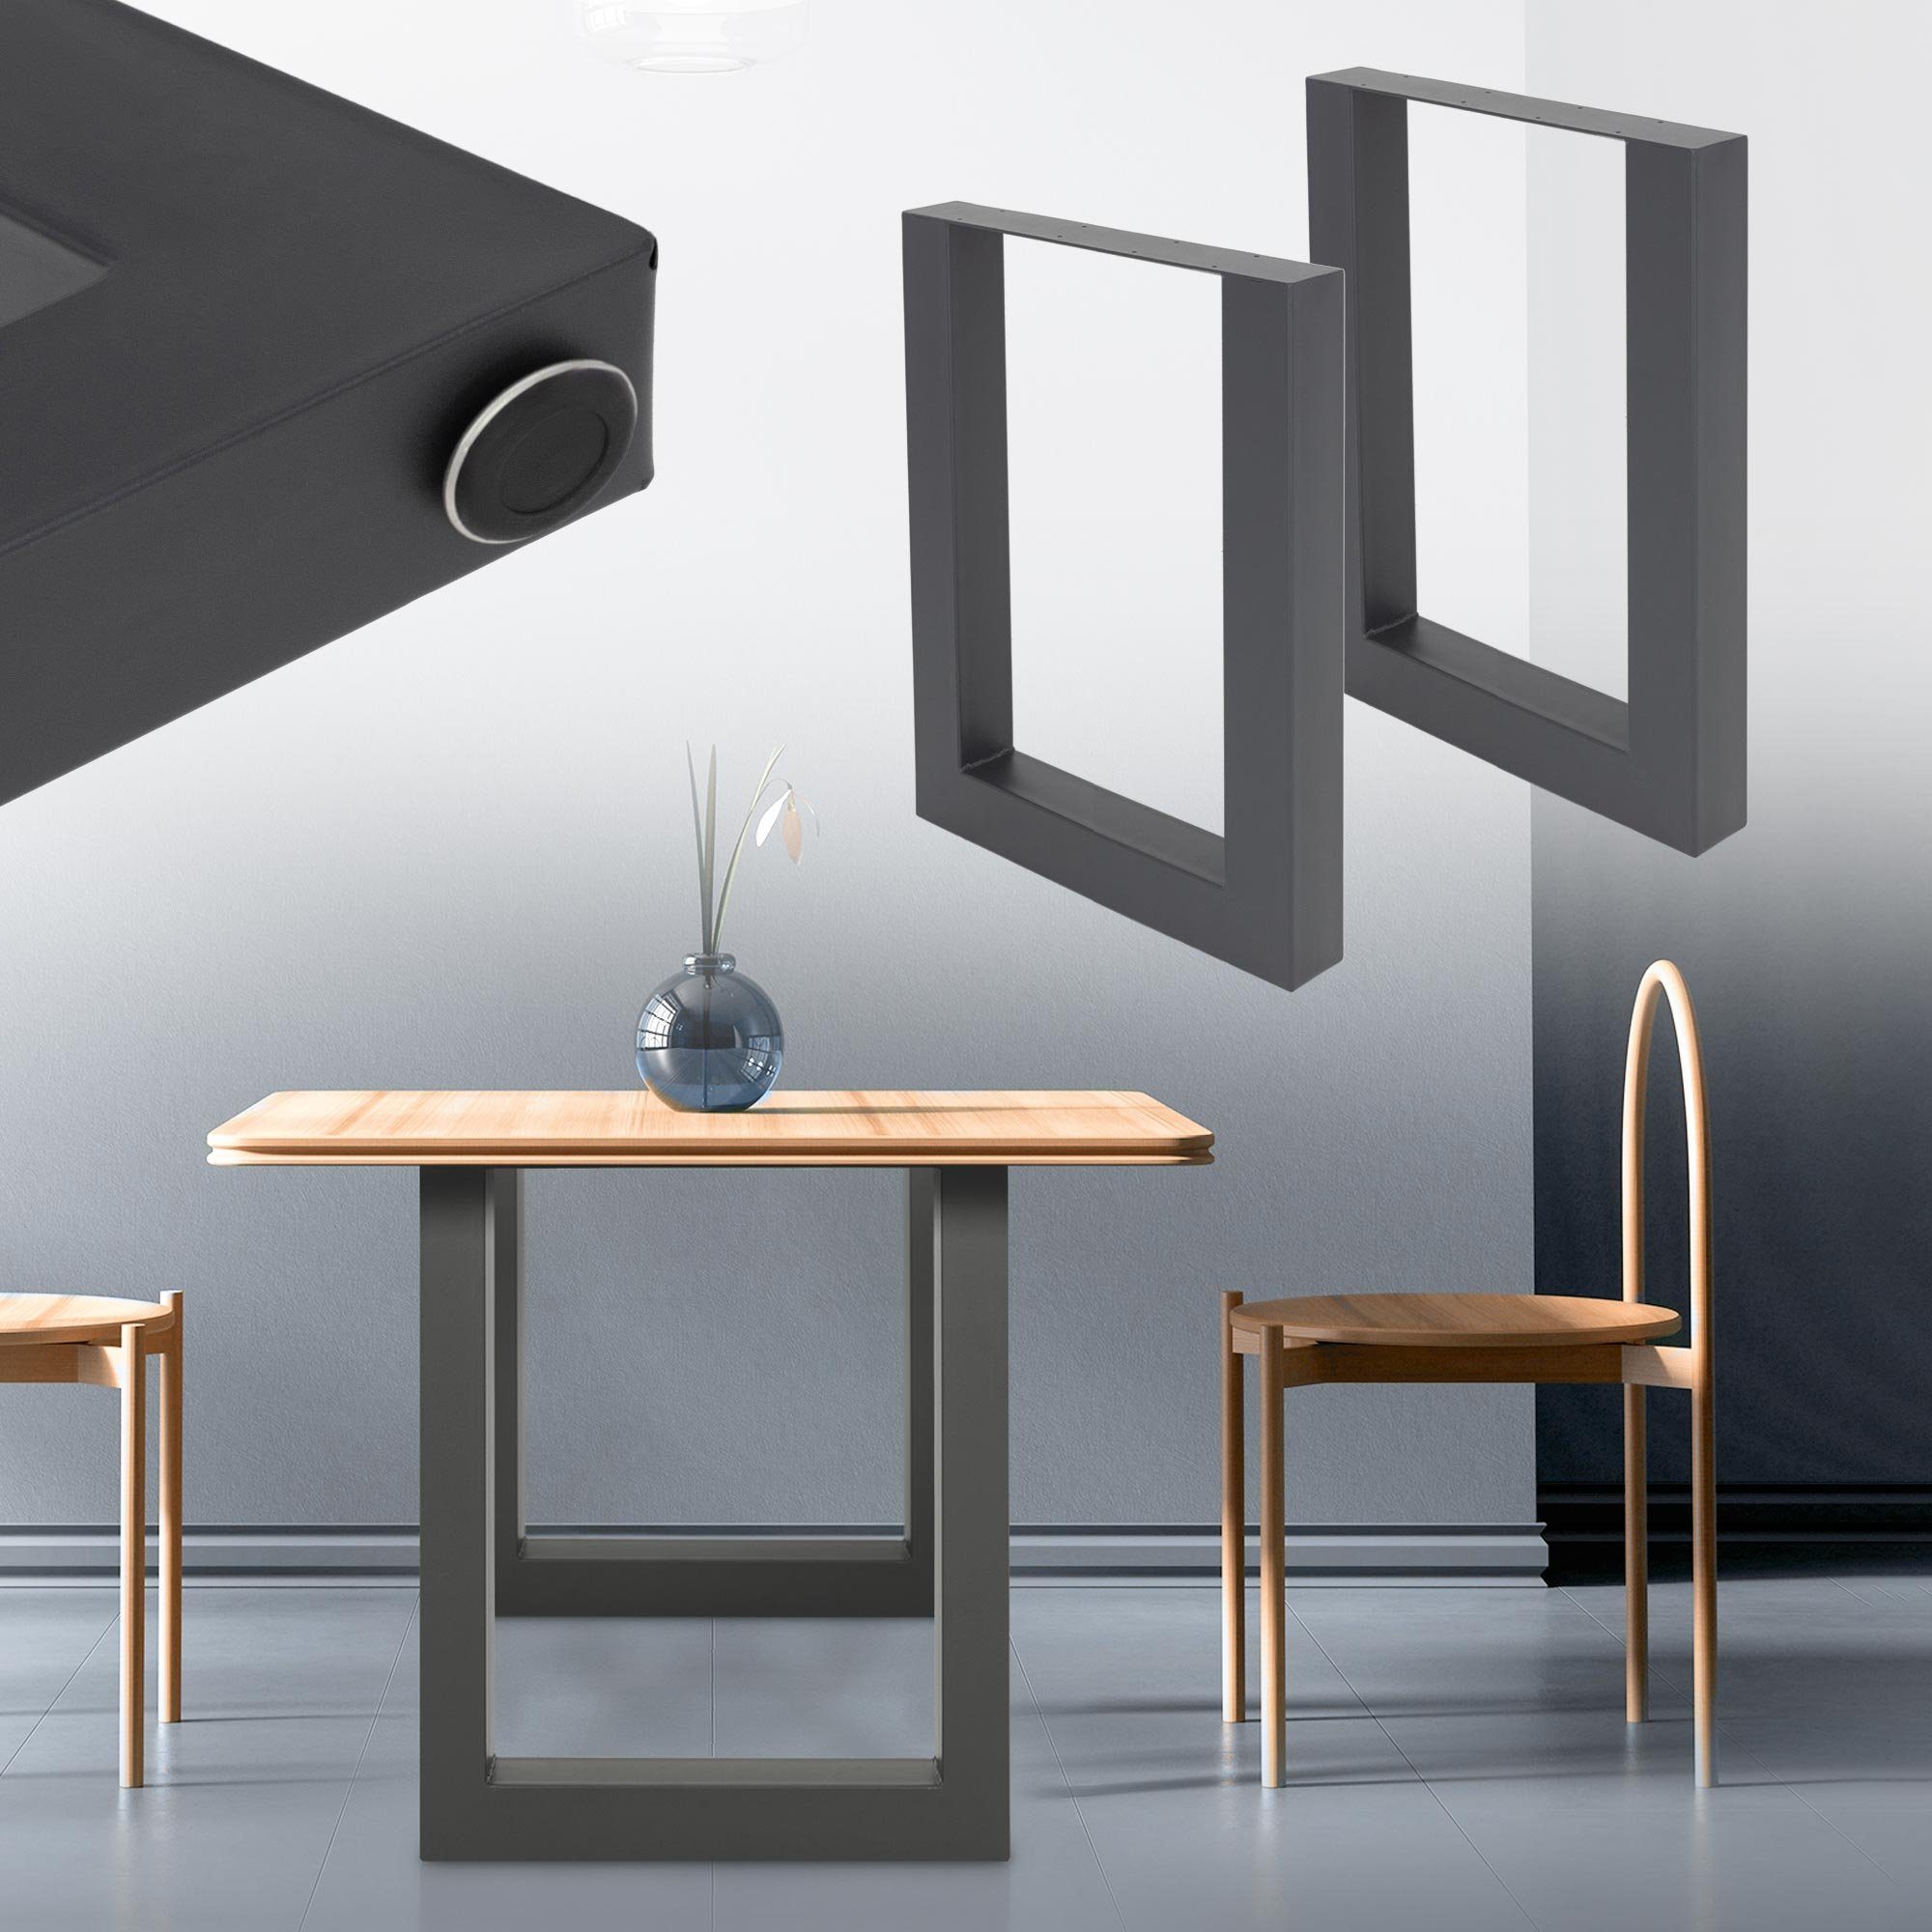 ML-DESIGN Tischbein Tischkufen Tischgestell Tischuntergestell Möbelfüße für  Esstisch, 2er Set 60x72,5cm Anthrazit pulverbeschichteter Stahl  Industriedesign